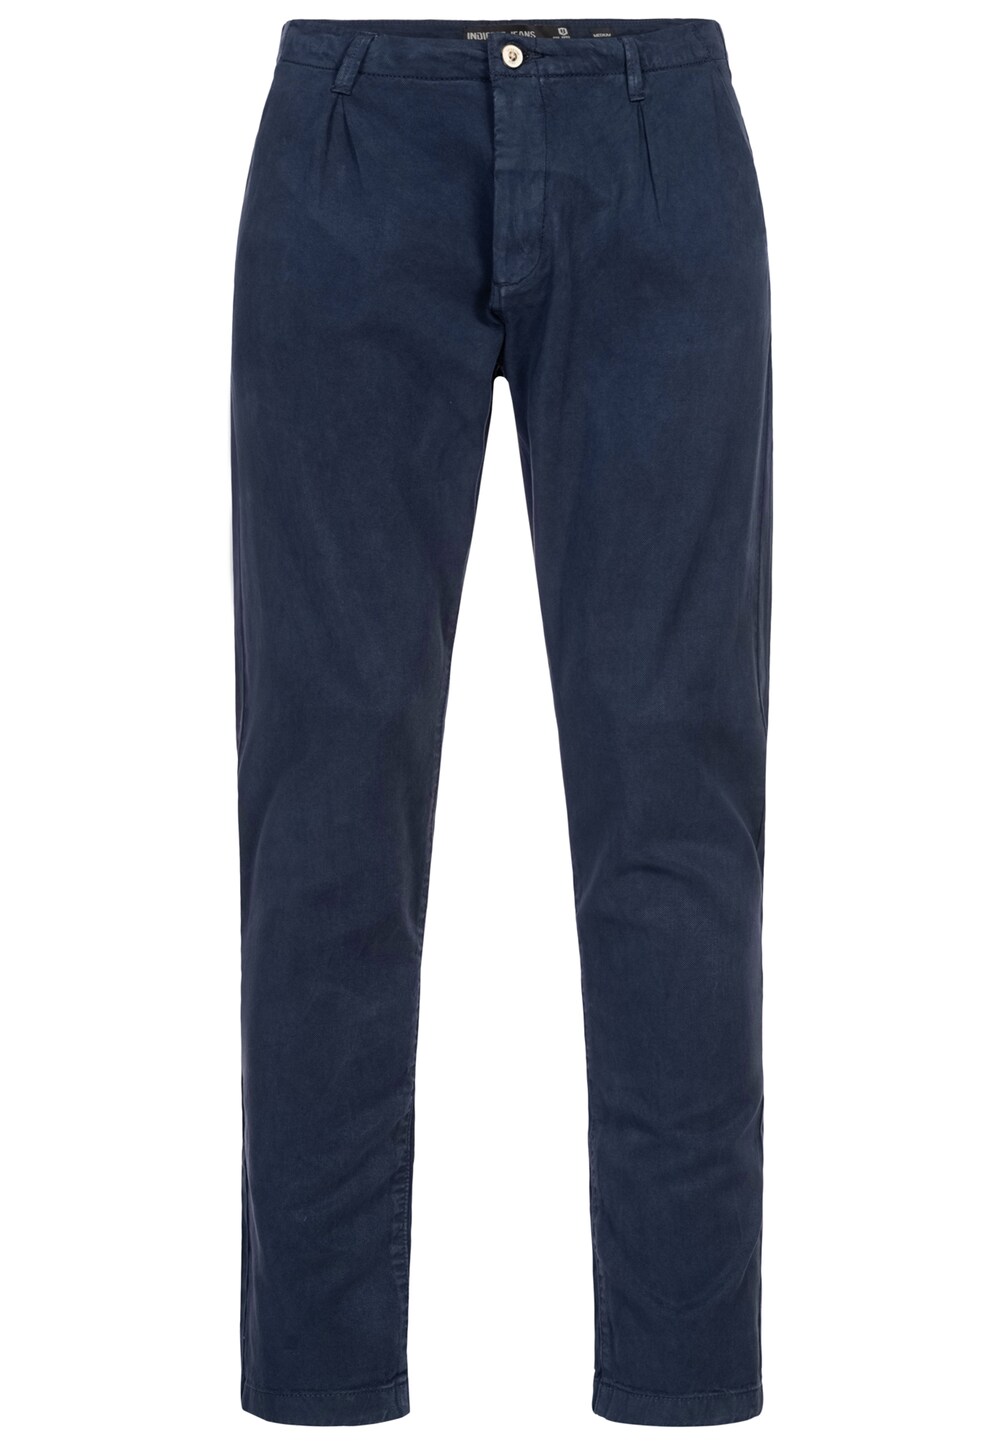 Обычные брюки чинос INDICODE JEANS Ville, синий обычные брюки чинос indicode jeans ville бежевый